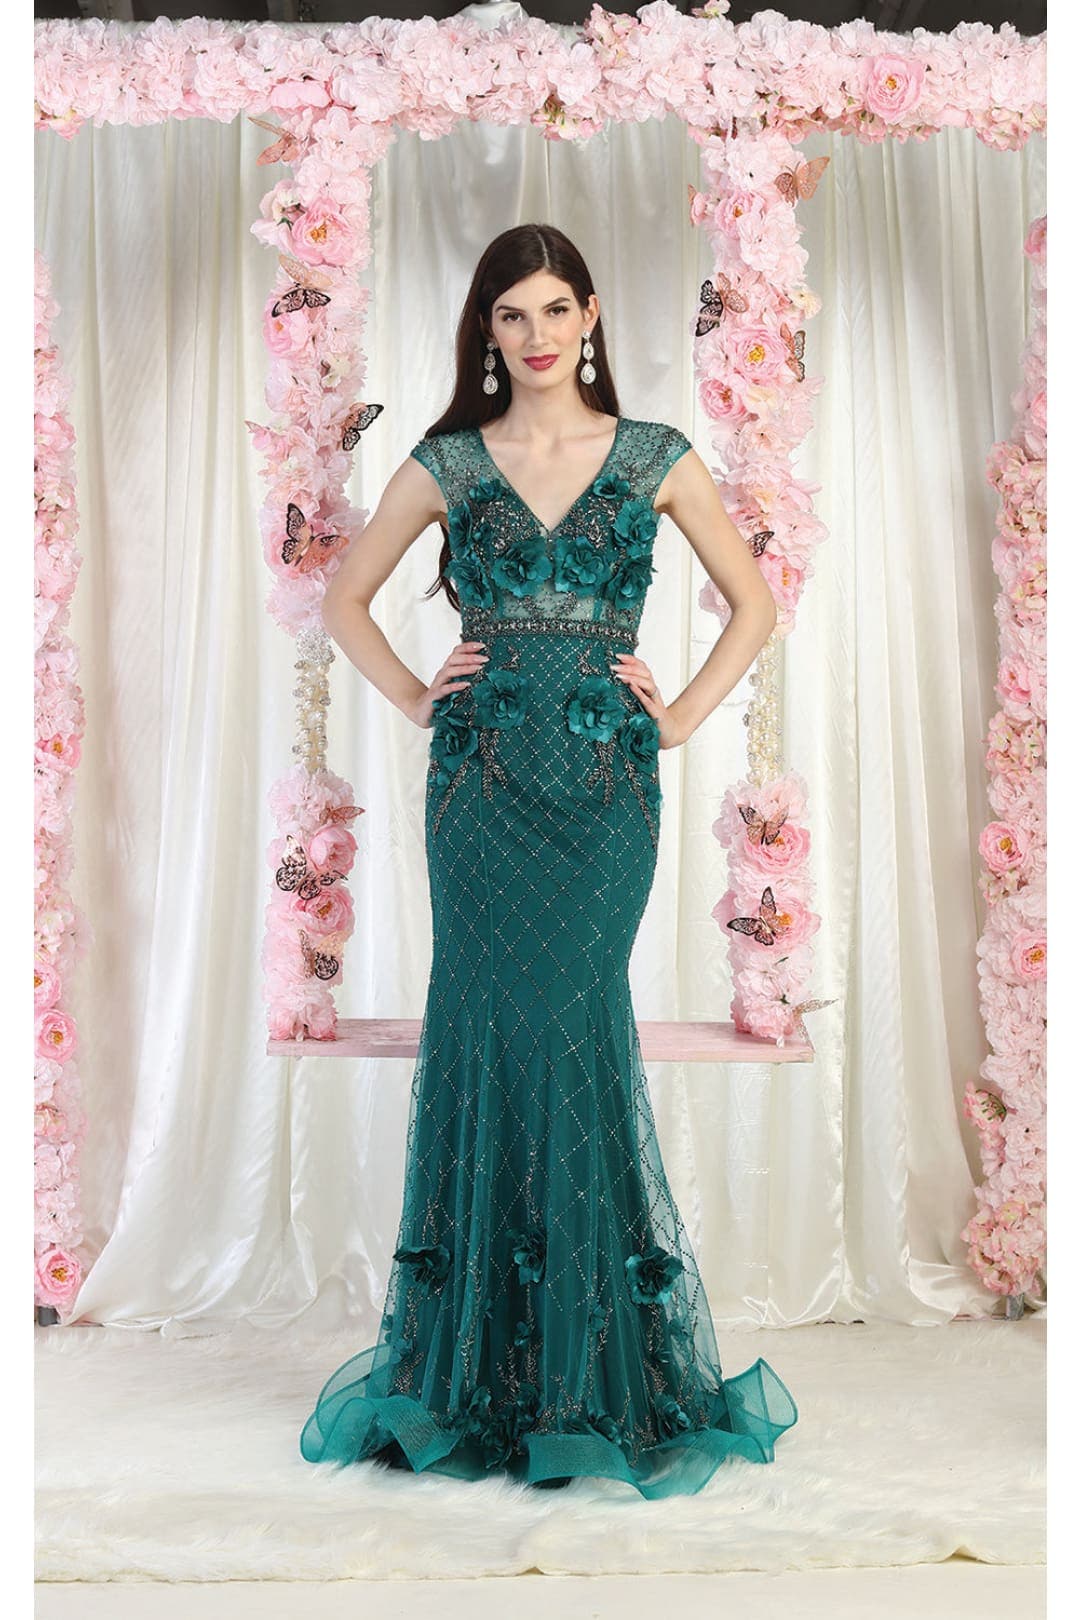 Royal Queen RQ7951 3D Floral Applique Evening Dress - HUNTER GREEN / 4 - Dress